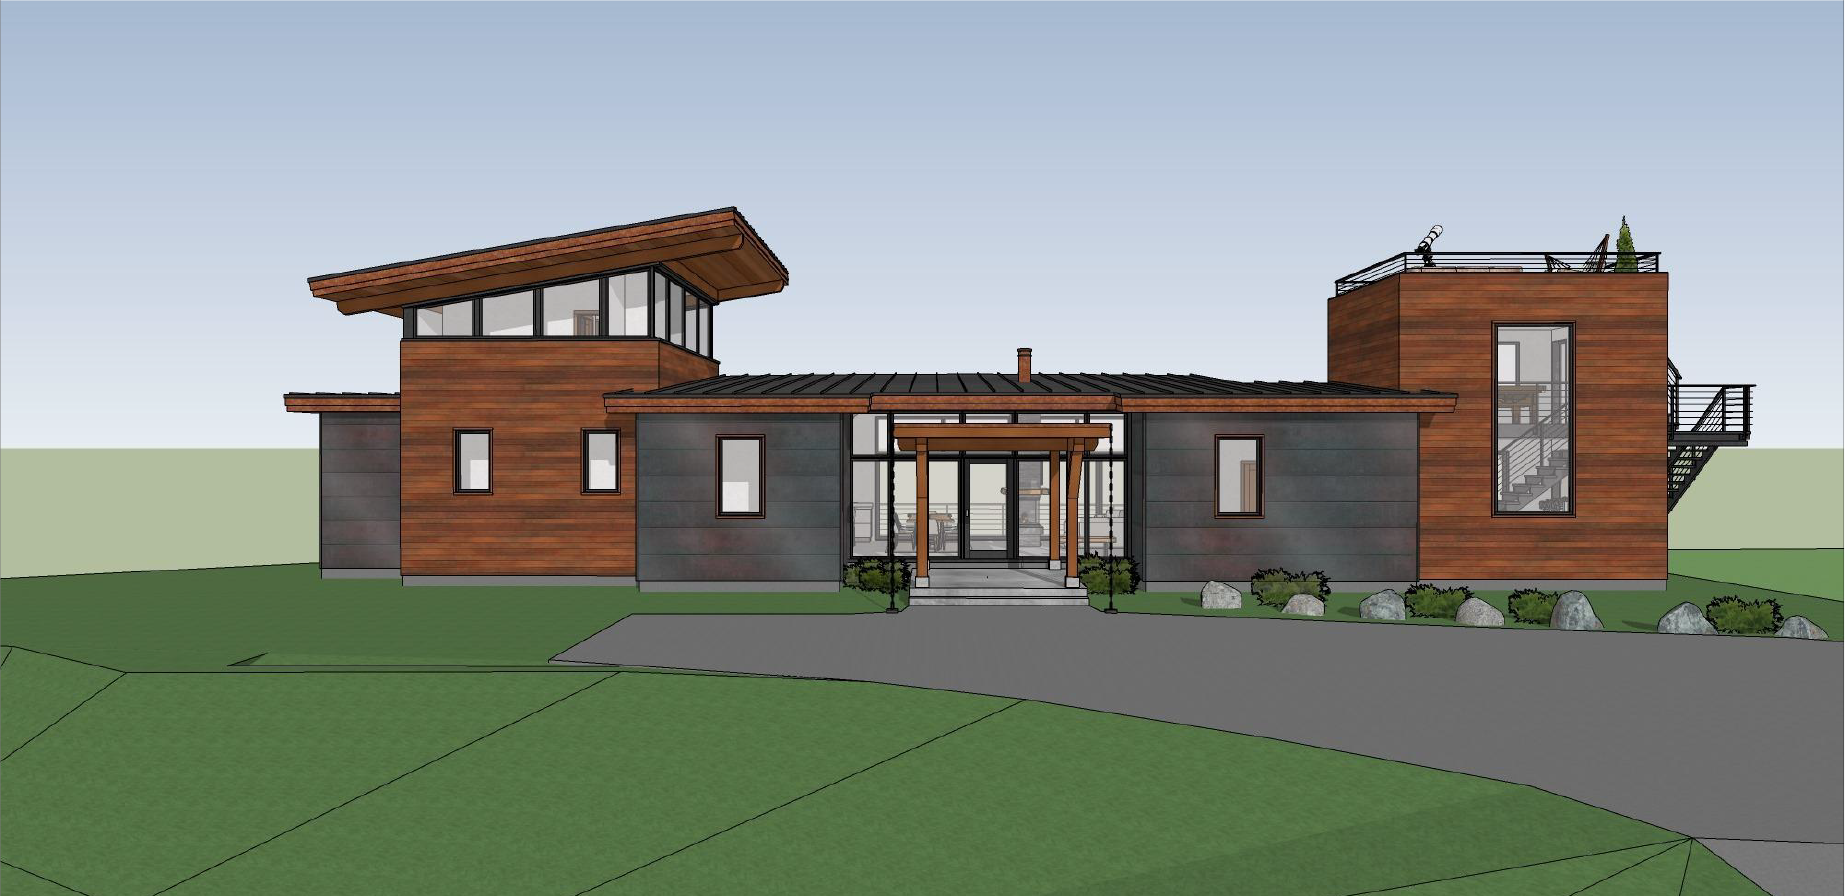 exterior design of the facede of a Rocky Mountain modern house